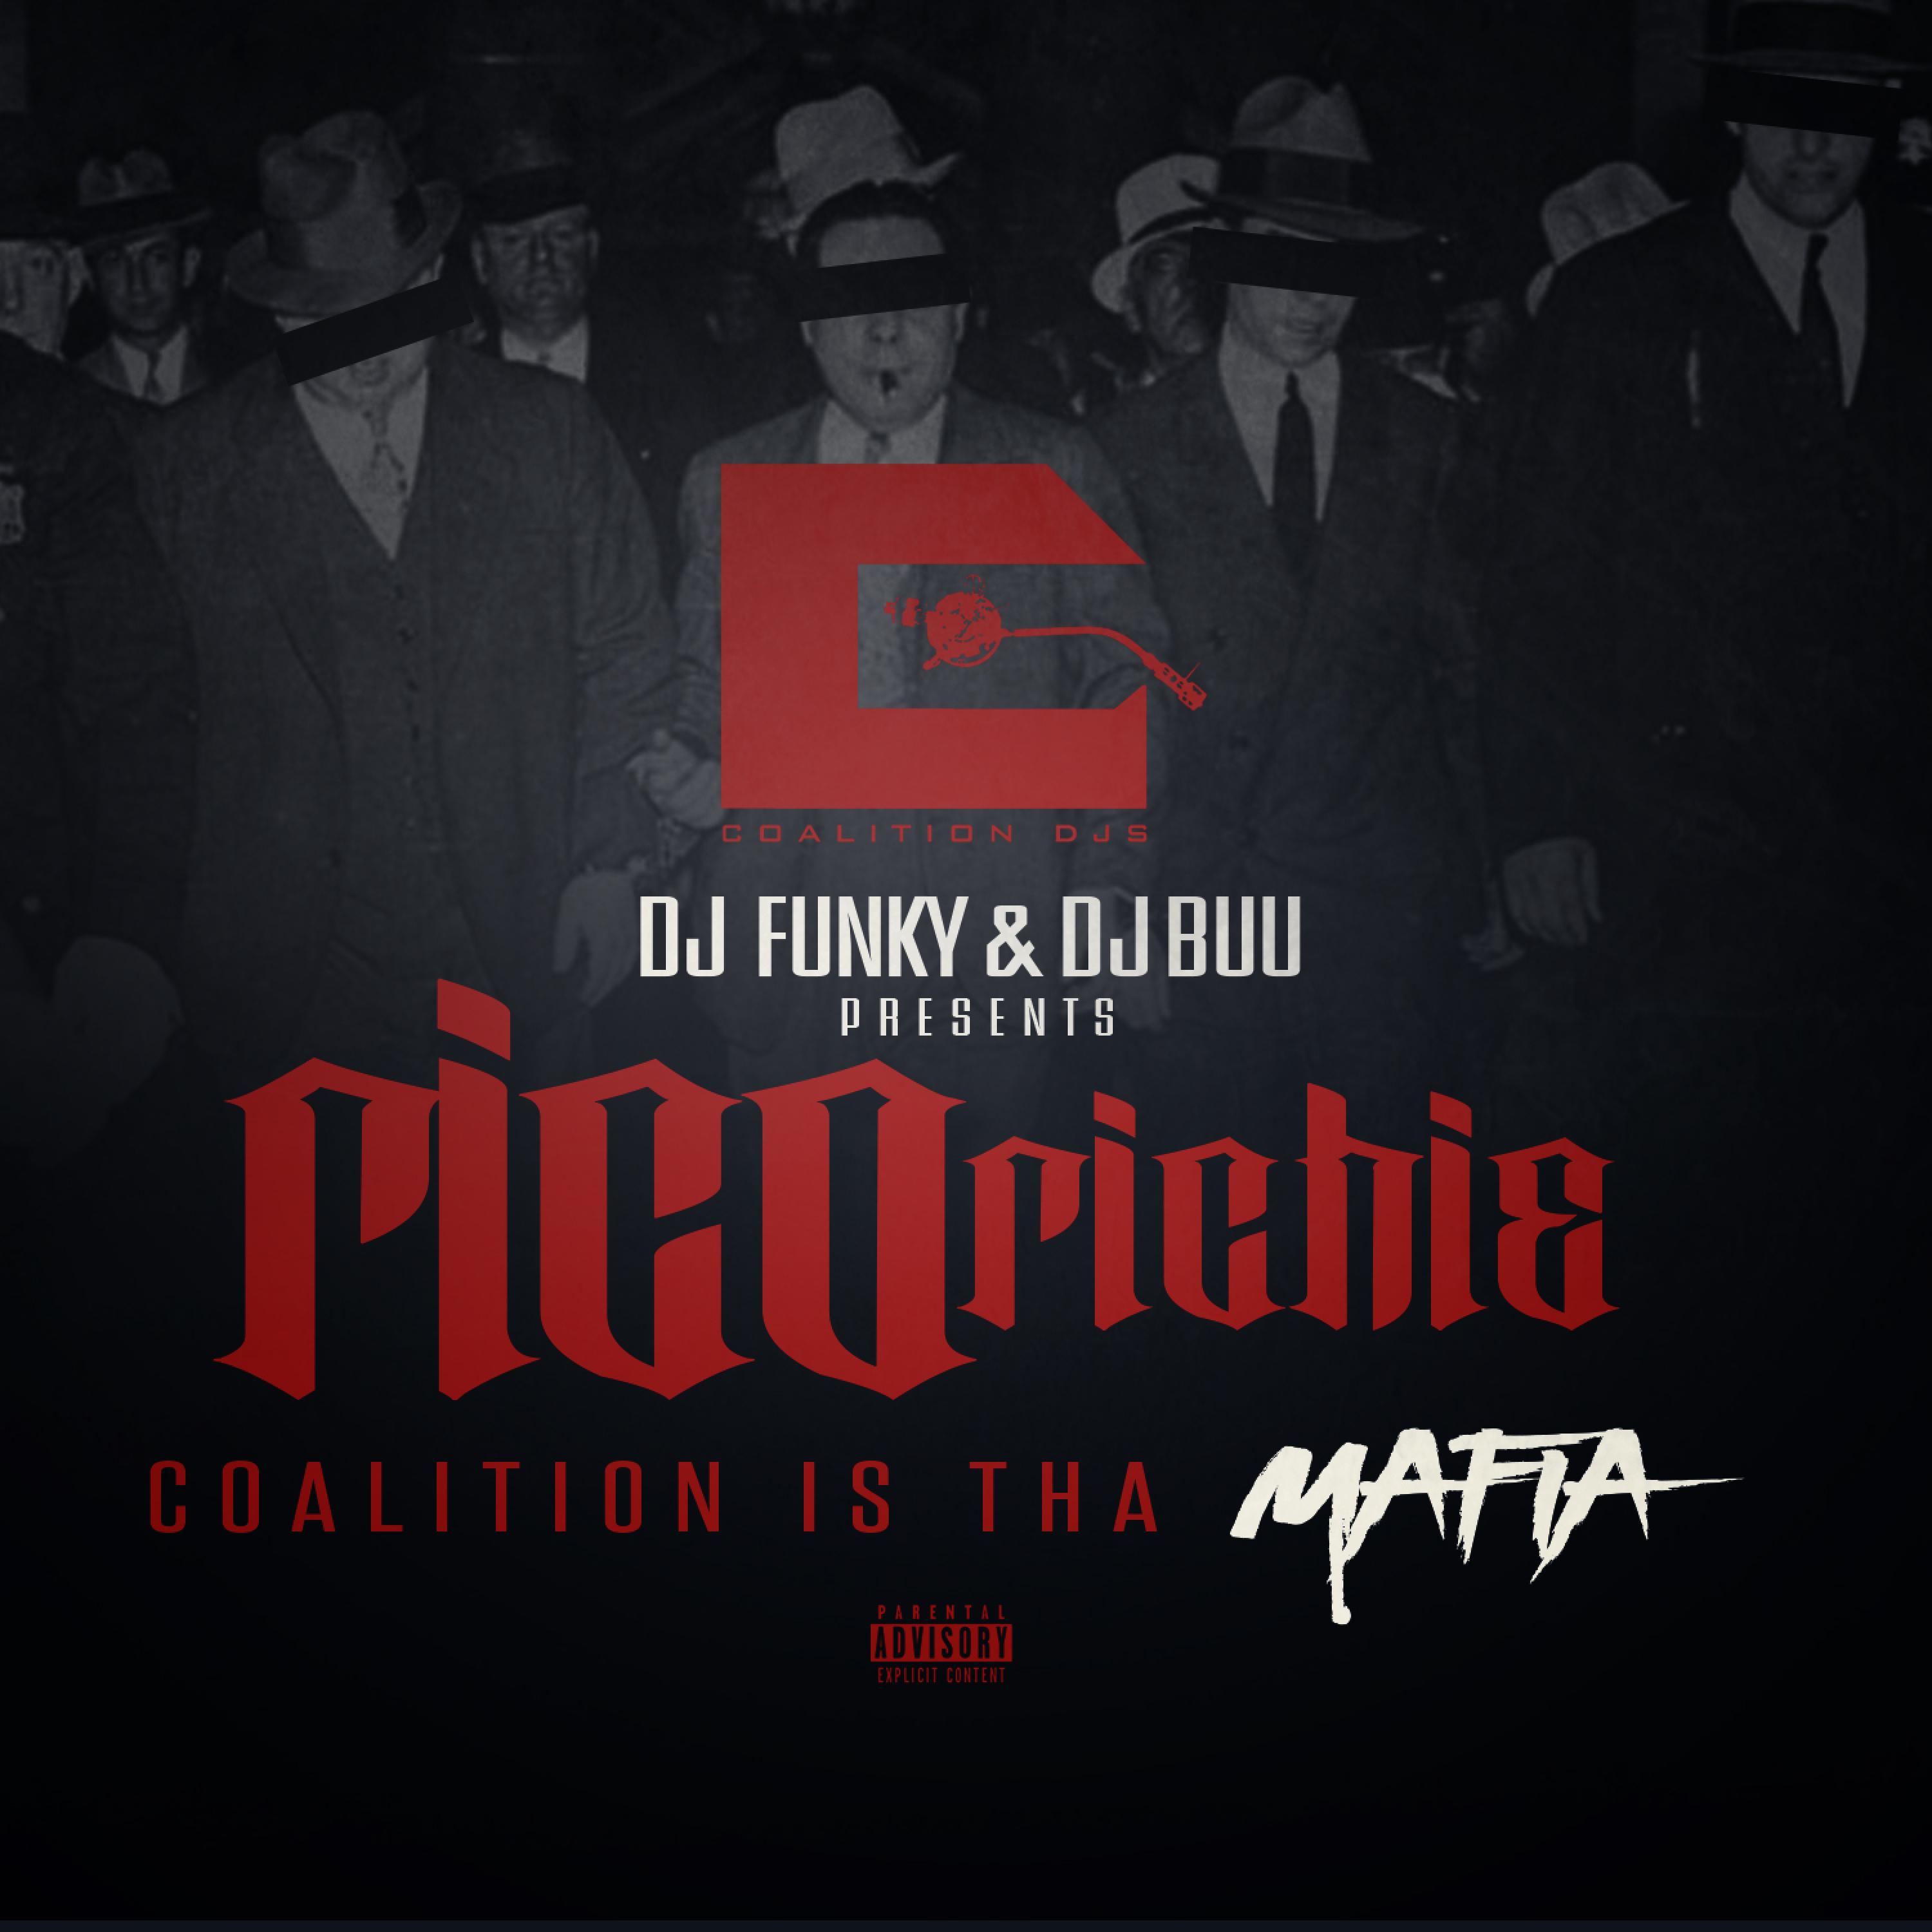 Coalition Is tha Mafia